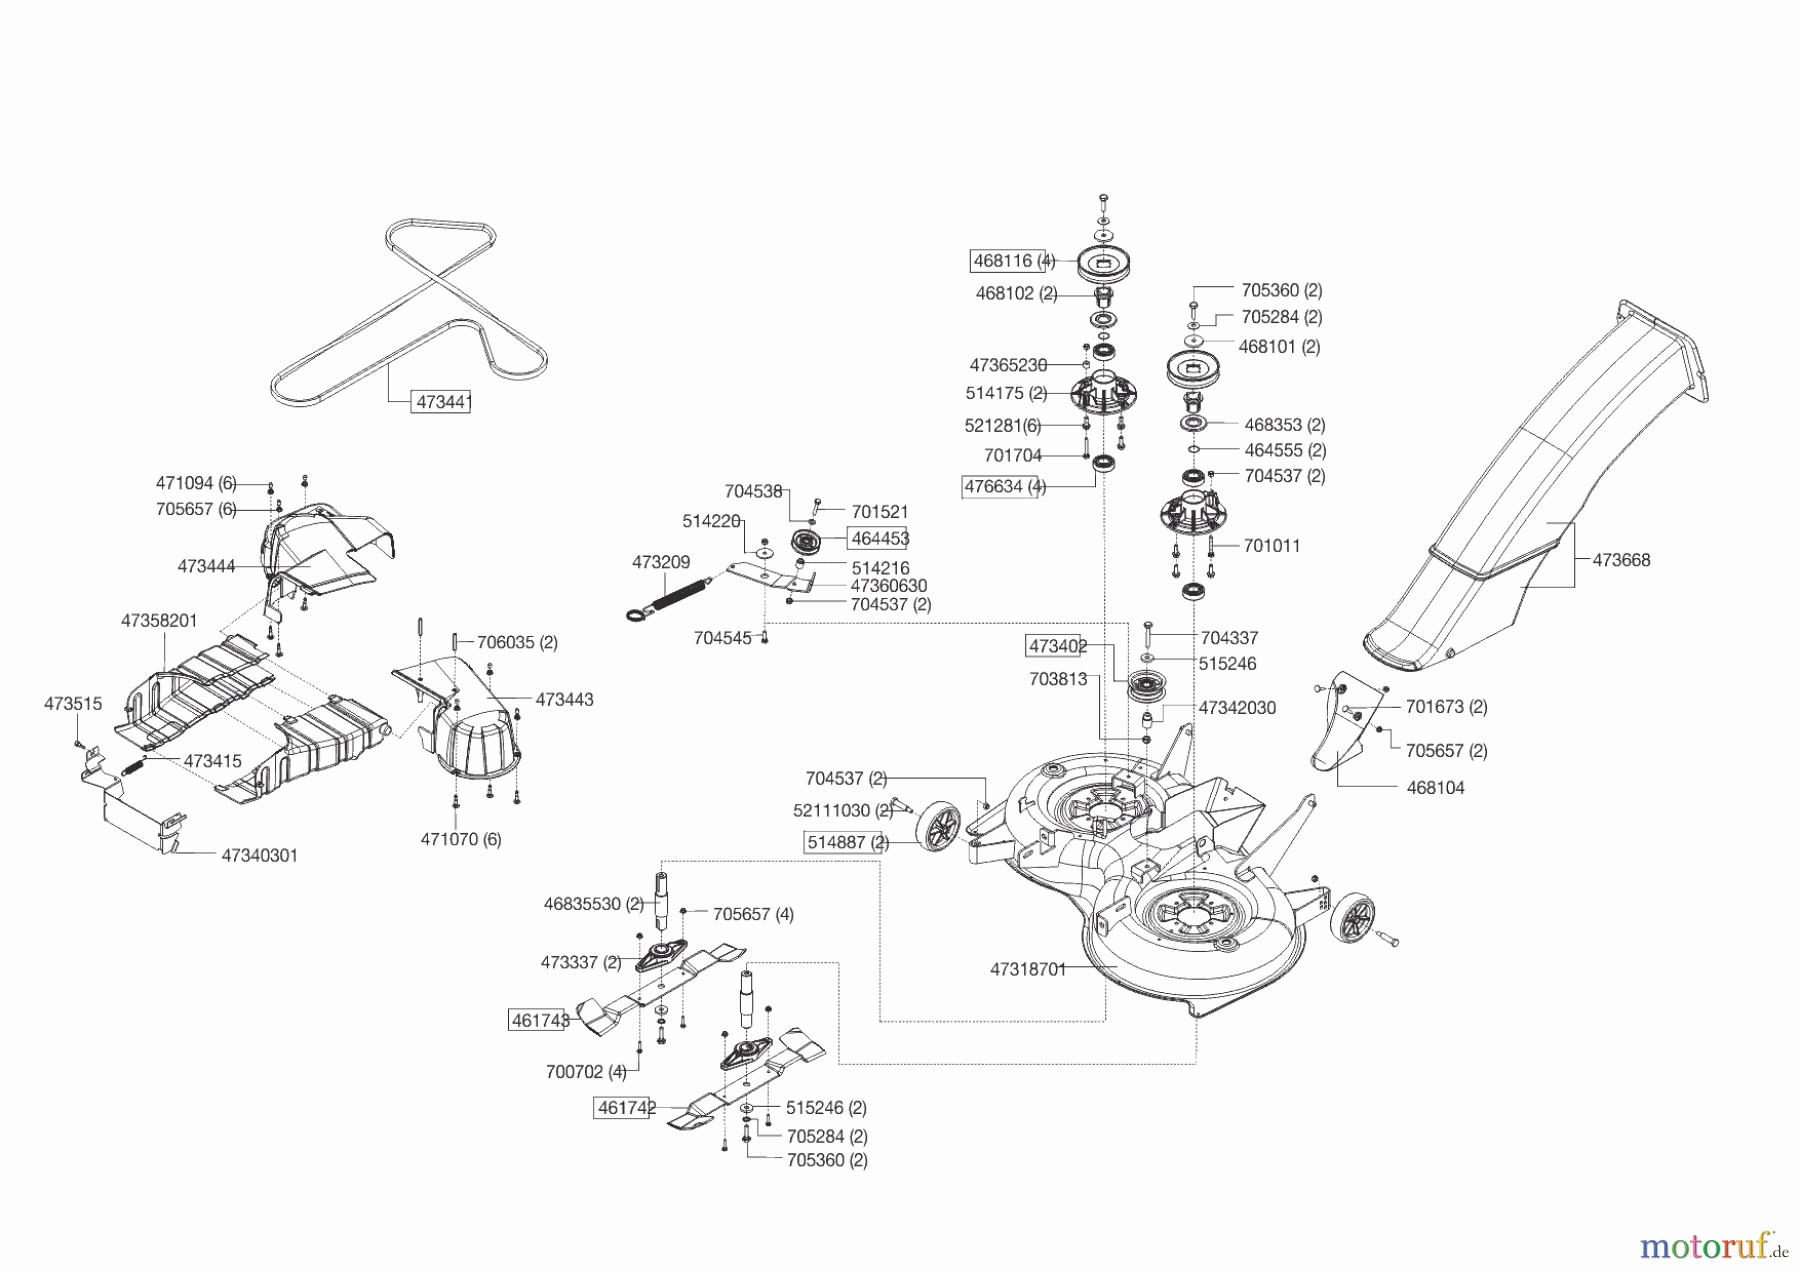  Powerline Gartentechnik Rasentraktor T 16-95.4 HD V2  ab 09/2016 Seite 6